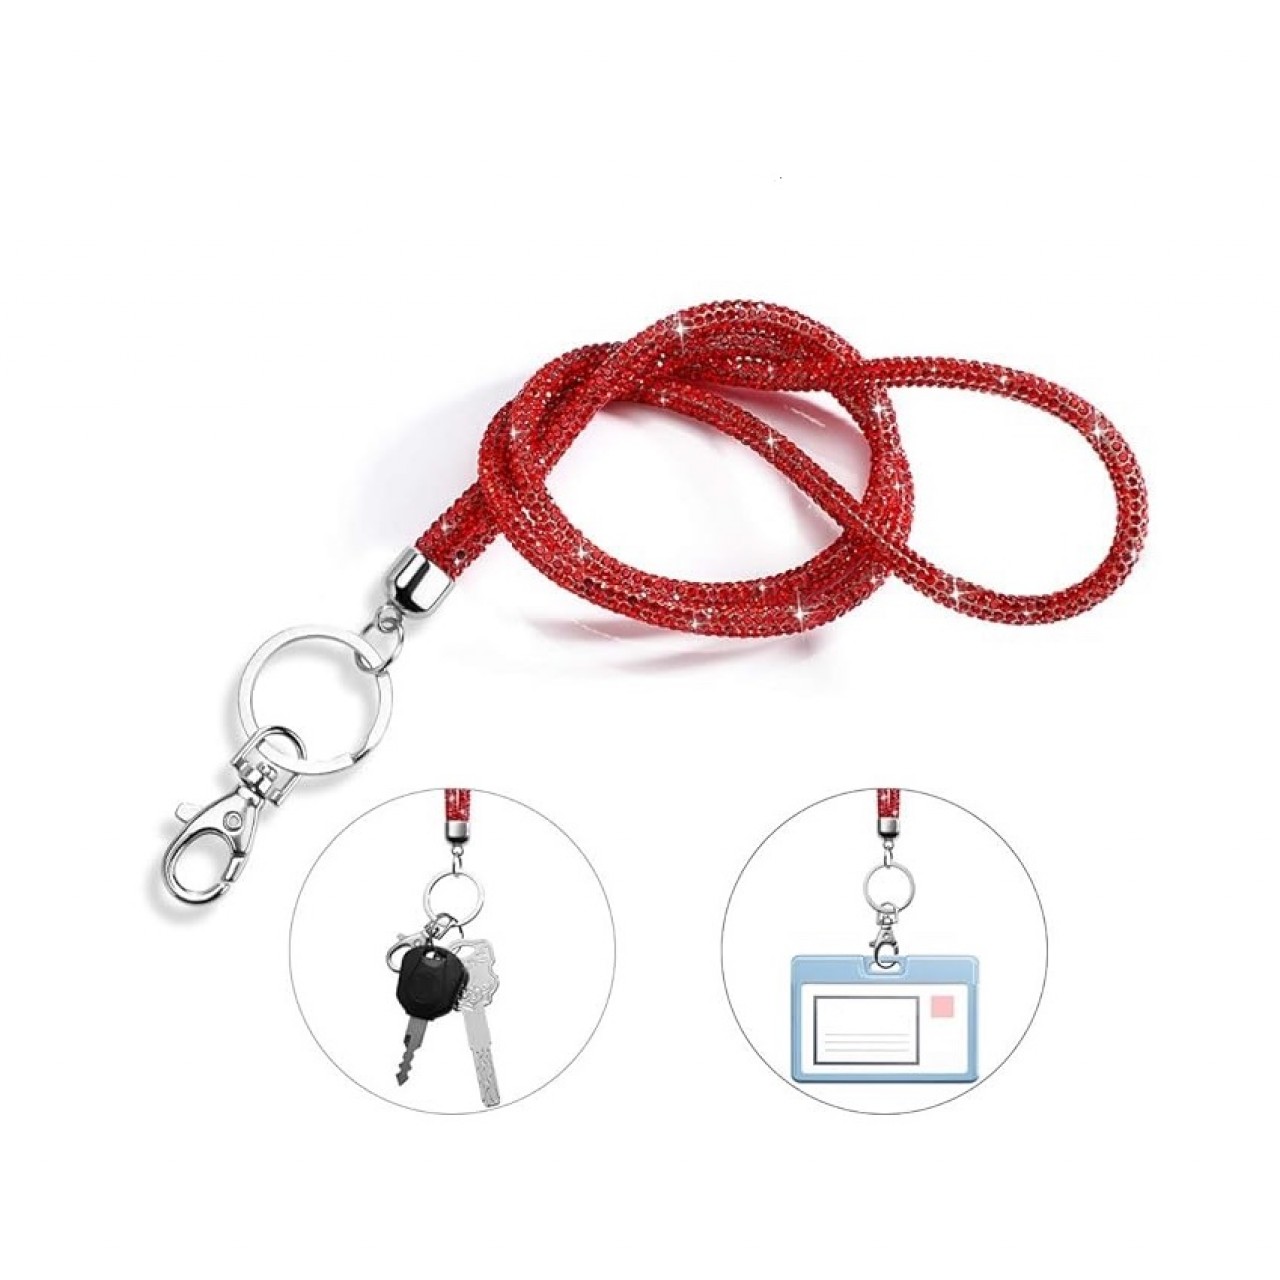 Λουράκι Λαιμού Κινητού Στρας με Μεταλλικό Δαχτυλίδι Κόκκινο - Red Mobile Strass Necklace